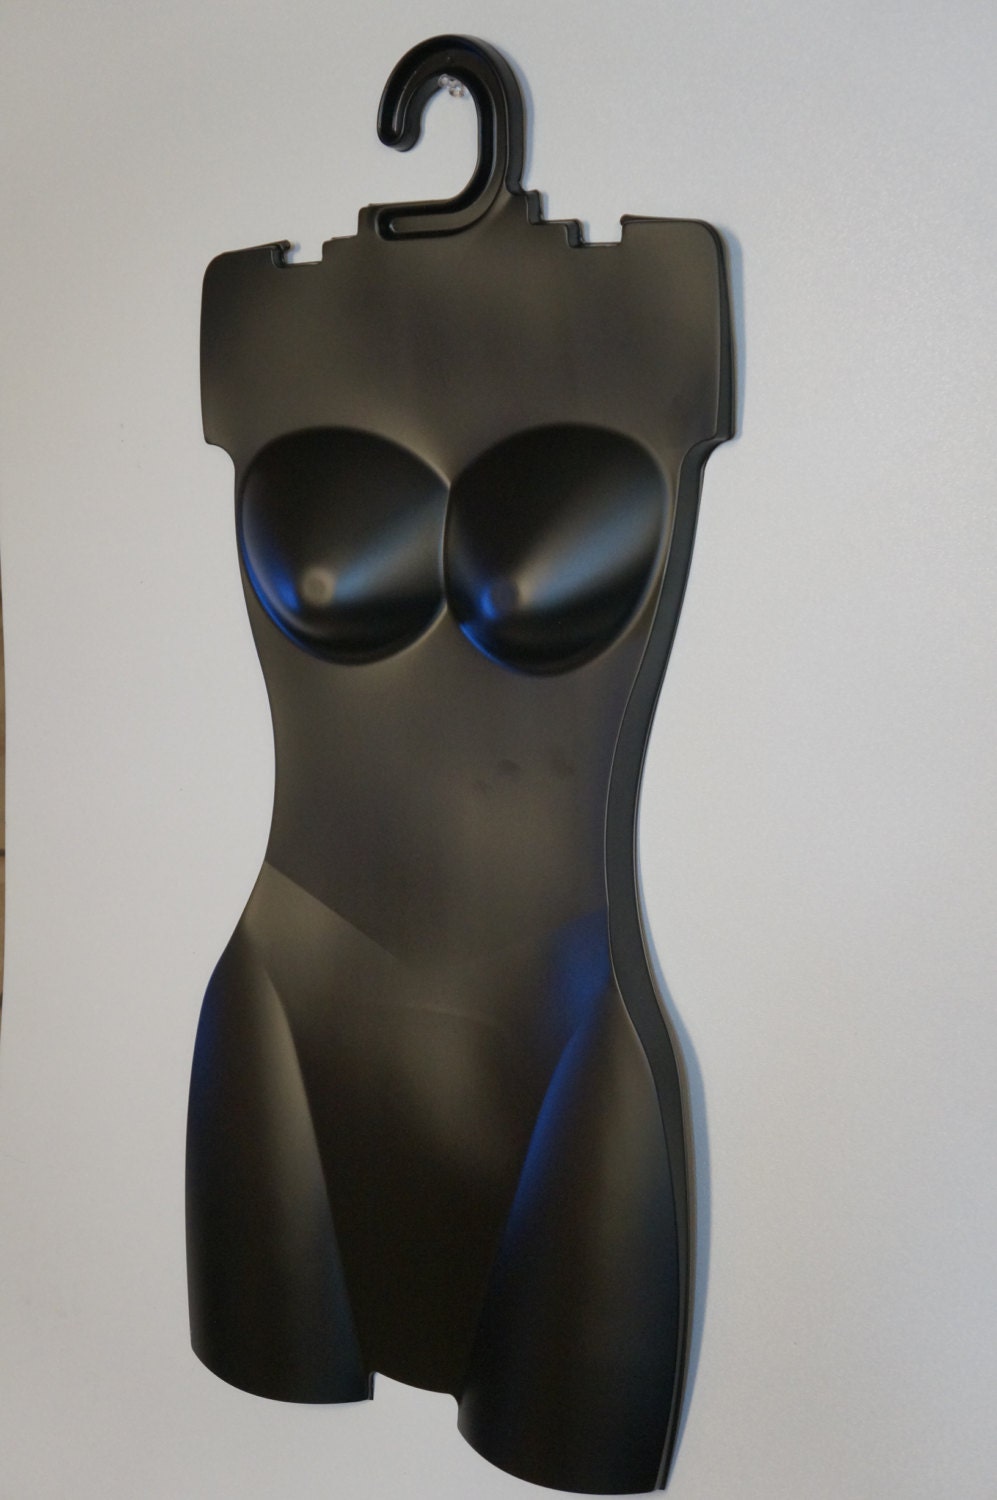 Cintres lingerie féminine plastique, présentoirs sous-vêtements femme.